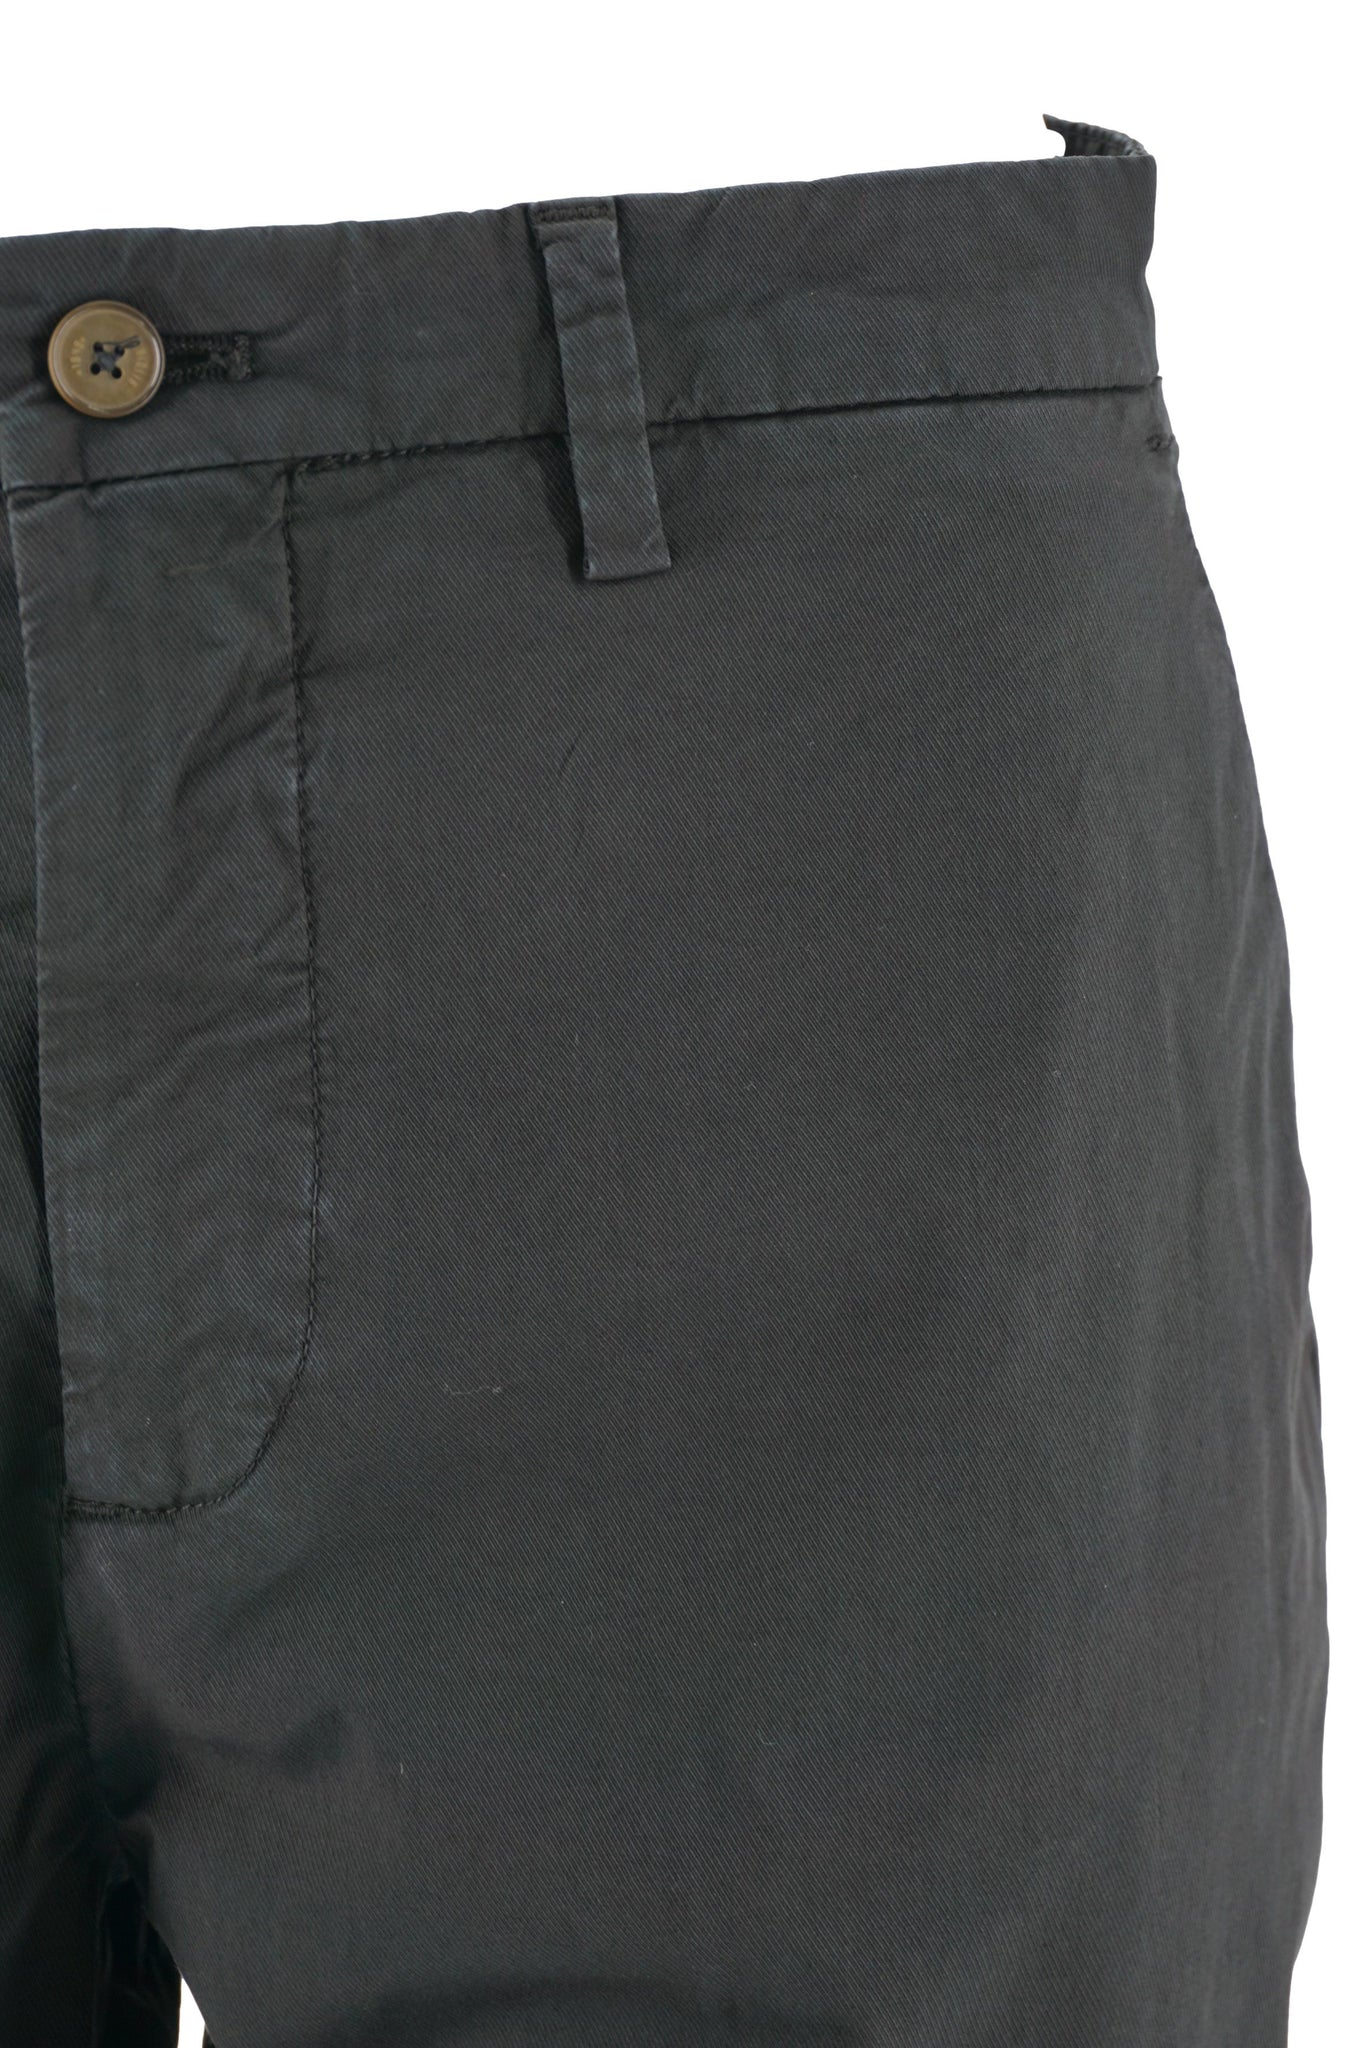 Pantalone Leggero in Cotone / Nero - Ideal Moda